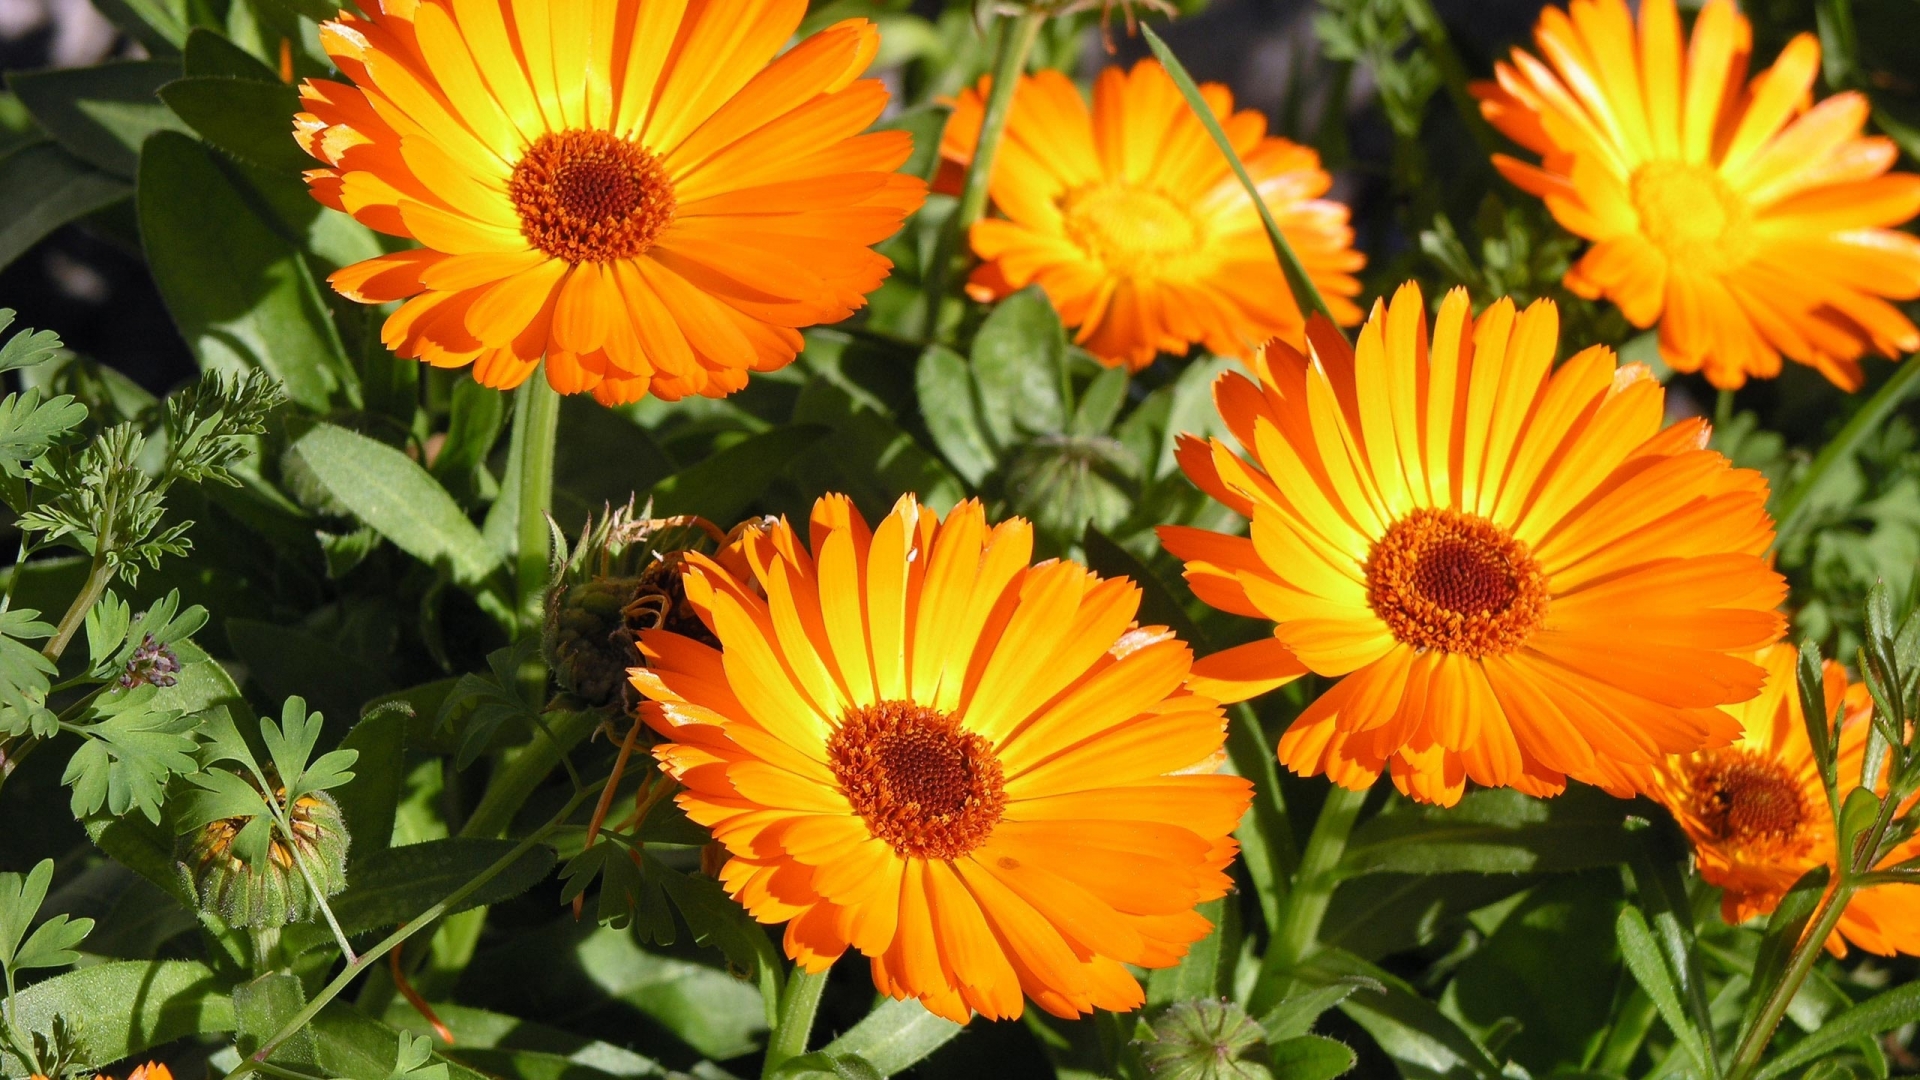 Sunbathing Flower for 1920 x 1080 HDTV 1080p resolution